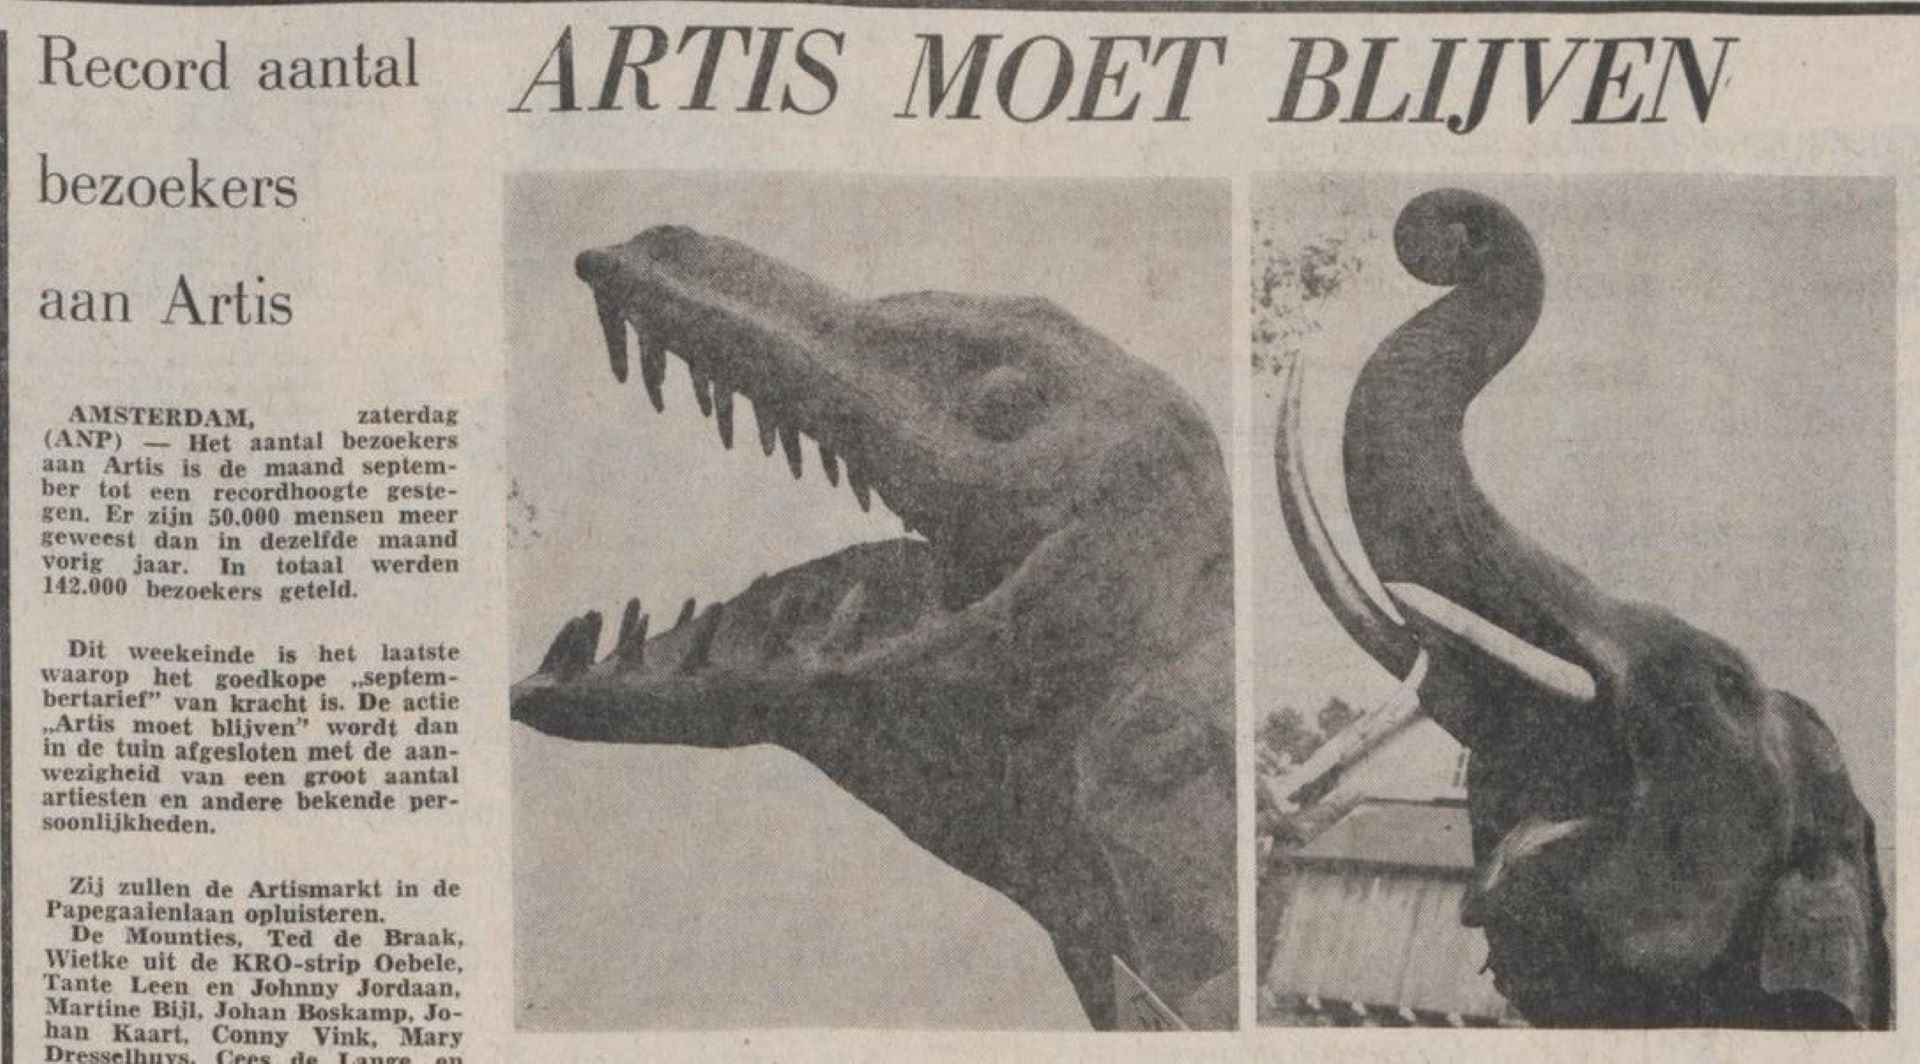 Artis moet Blijven tyrannosaurus vs olifant 1970.1920x1080.jpg